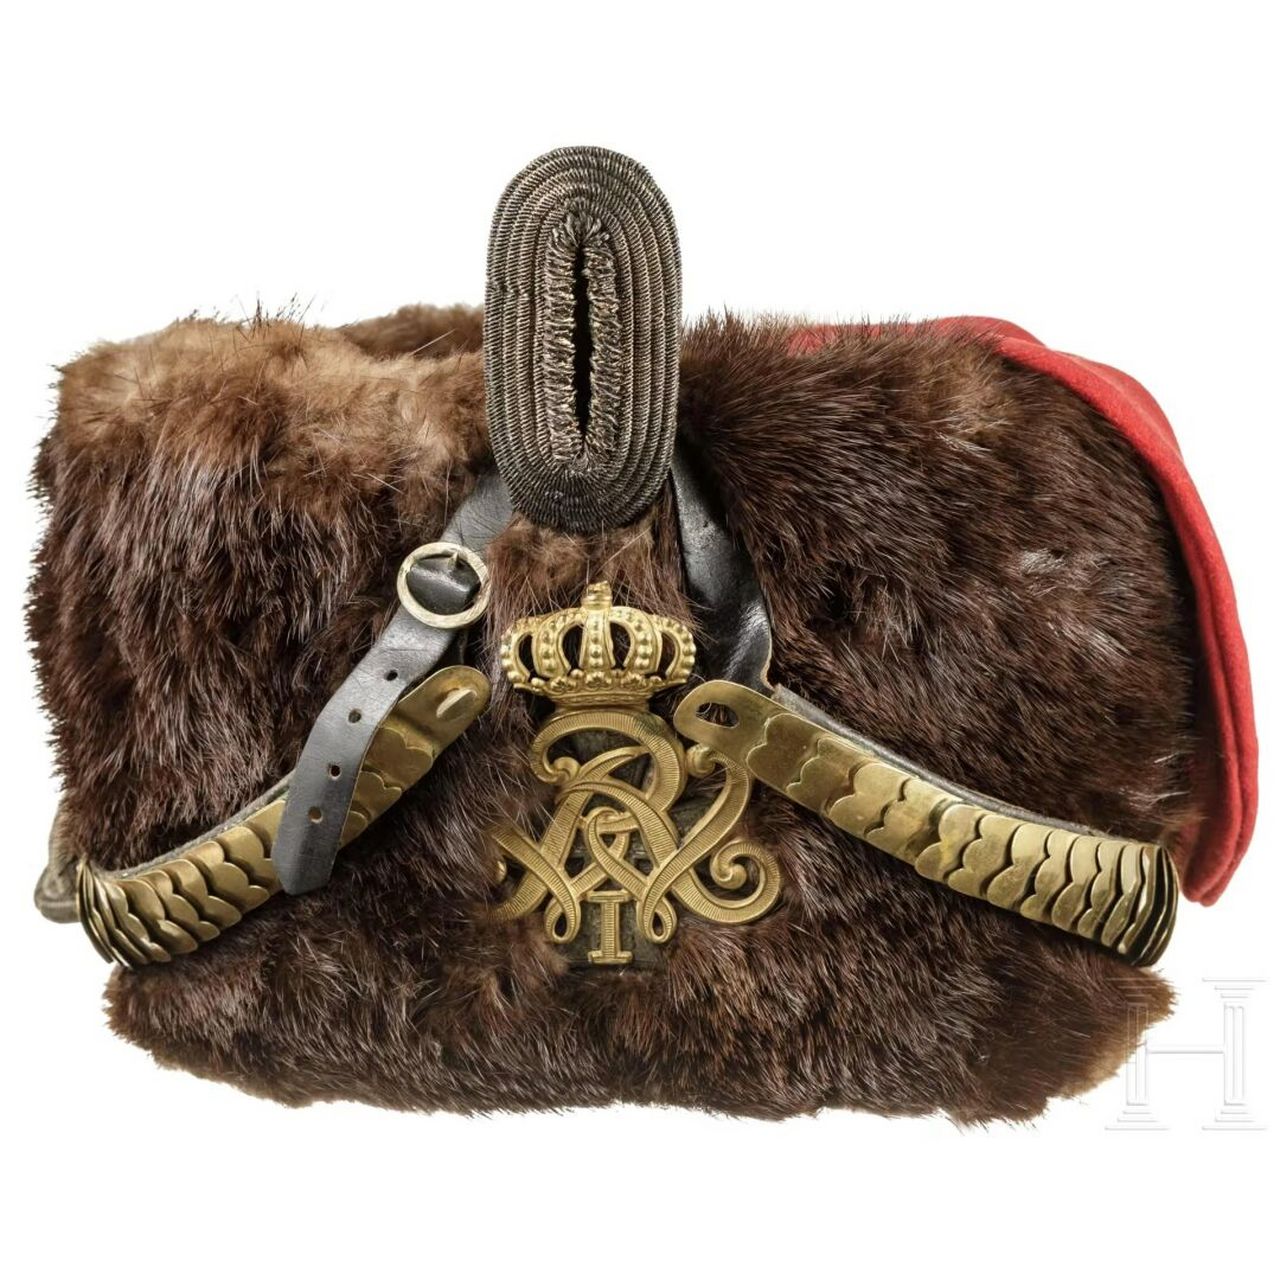 军事收藏:普鲁士骠骑兵军官帽 普鲁士第7骠骑兵团的军官帽